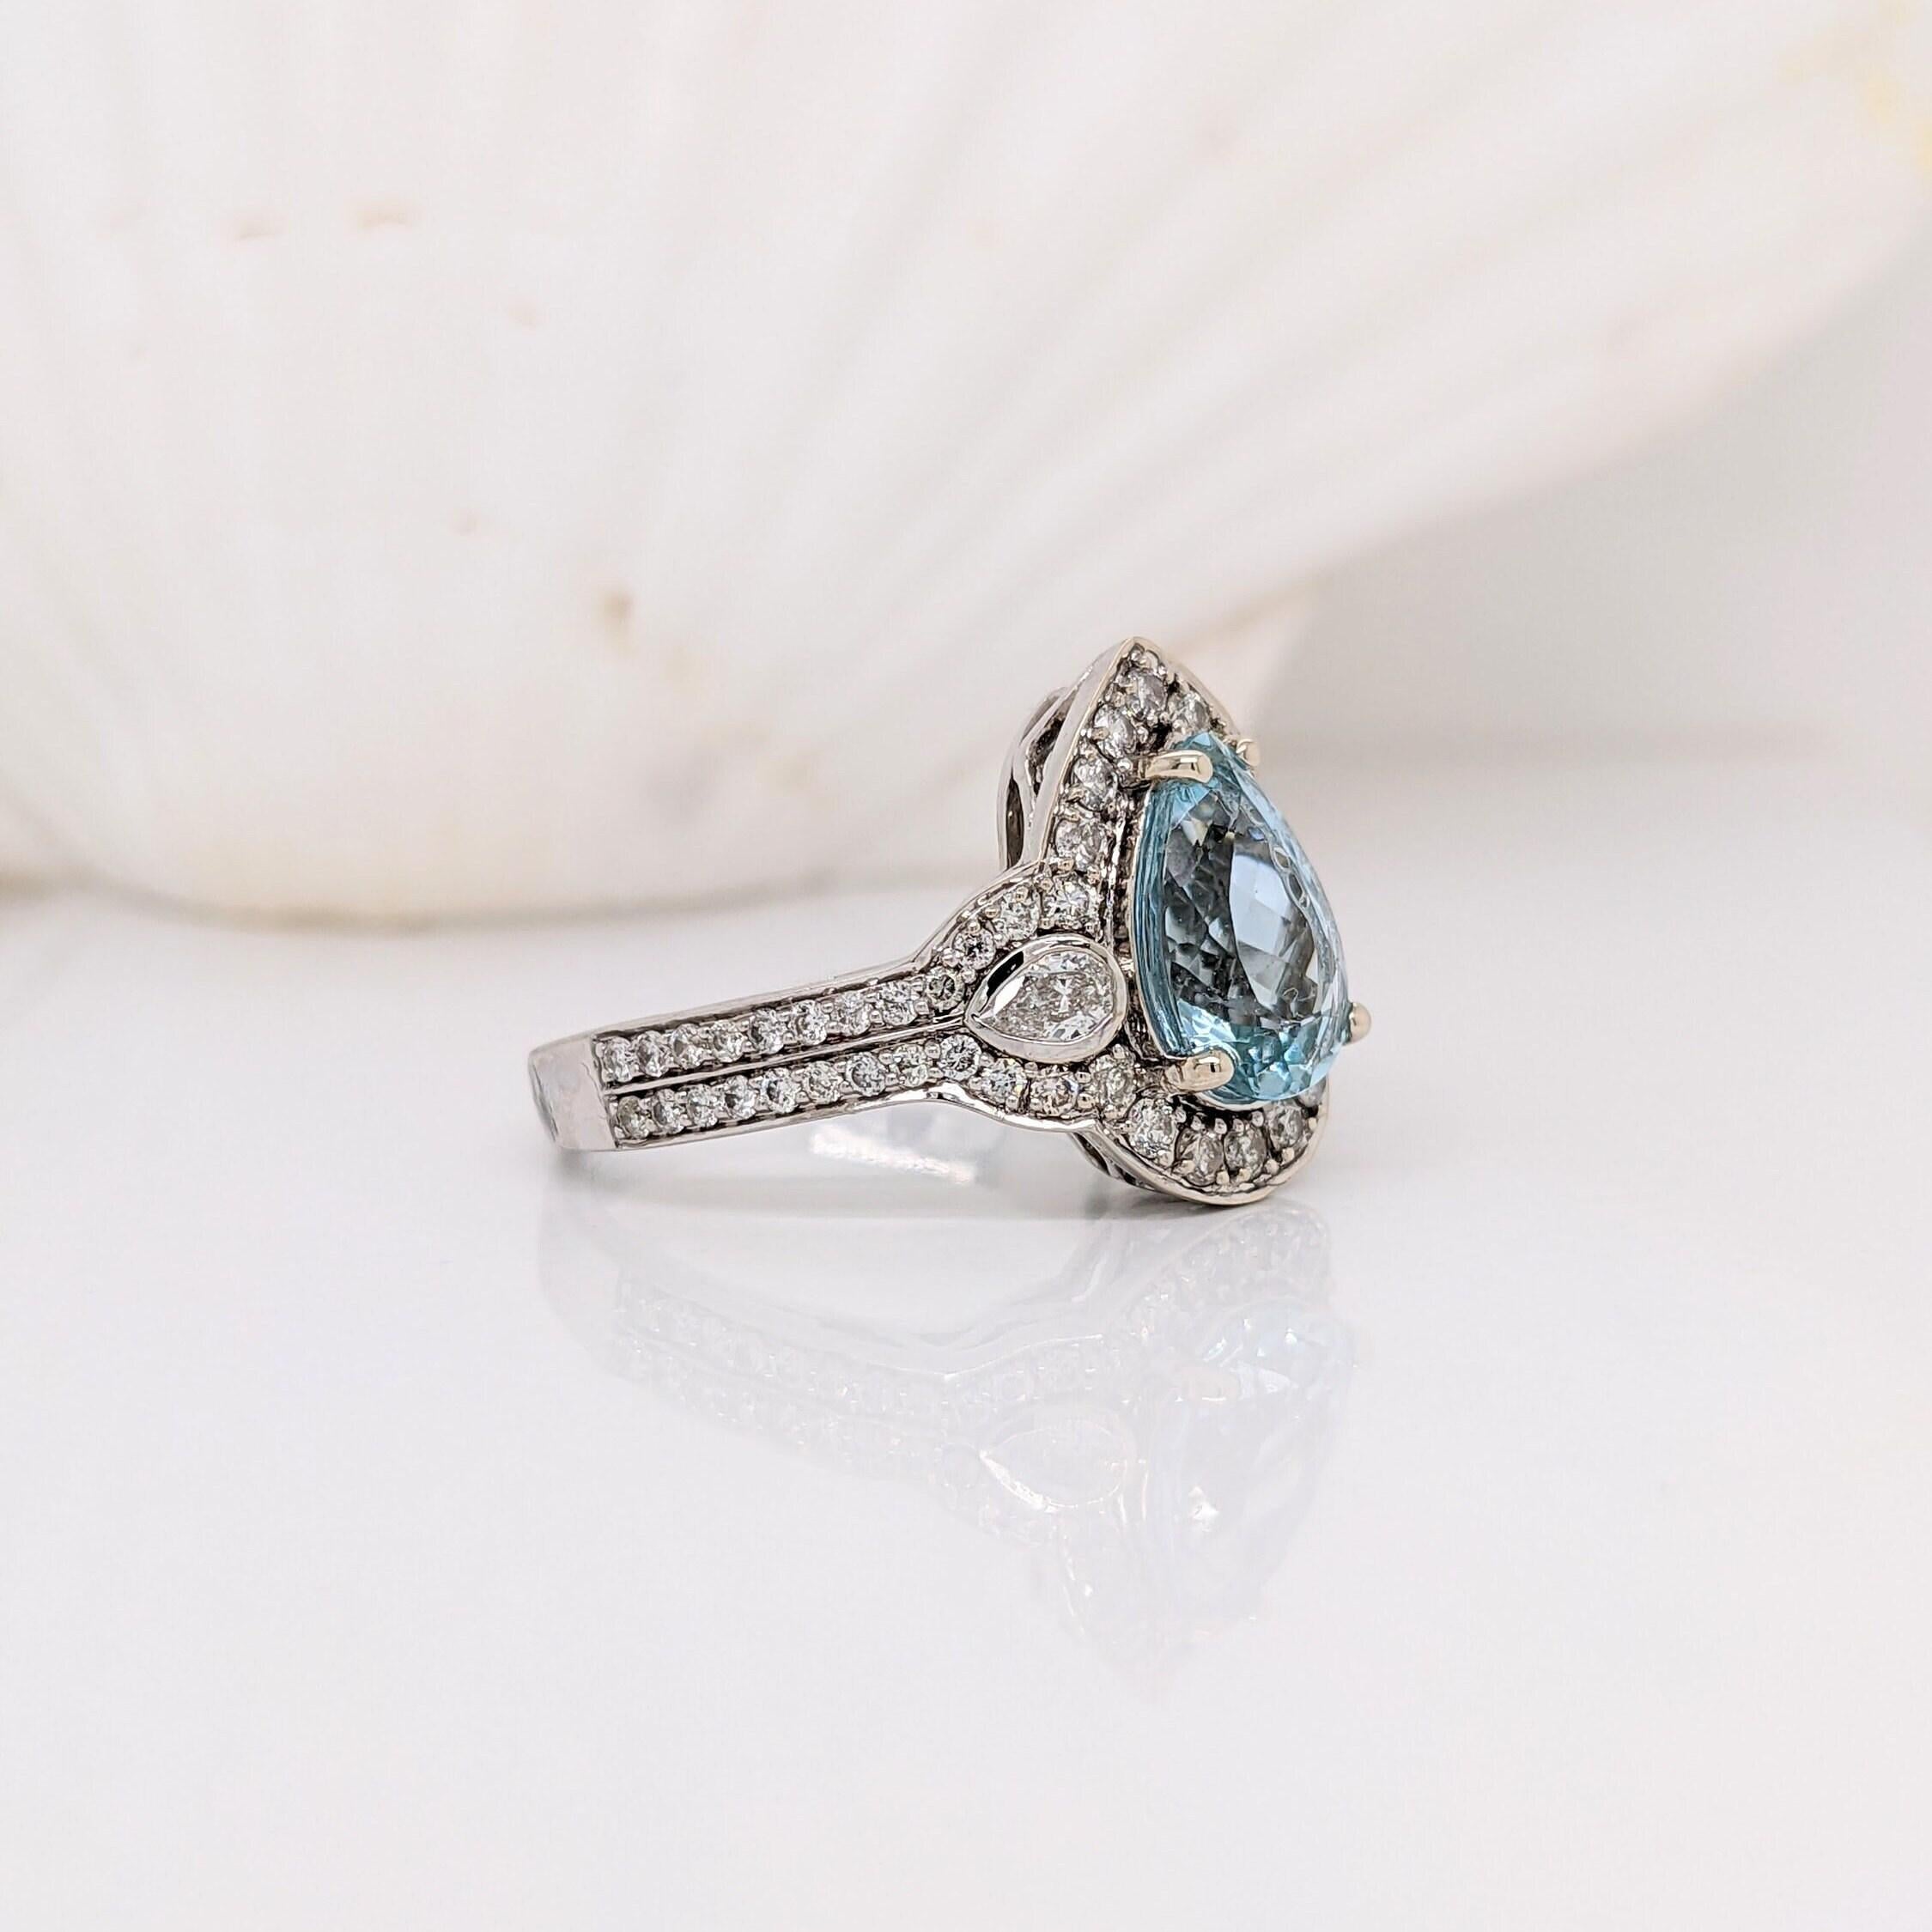 Eine schöne blaue Santa Maria Aquamarin Ring in massivem 14k Gold mit allen natürlichen Erde abgebaut Diamanten Akzente. Ein auffälliges Ringdesign, perfekt für eine auffällige Verlobung oder einen Jahrestag! 

Spezifikationen

Artikel Typ: